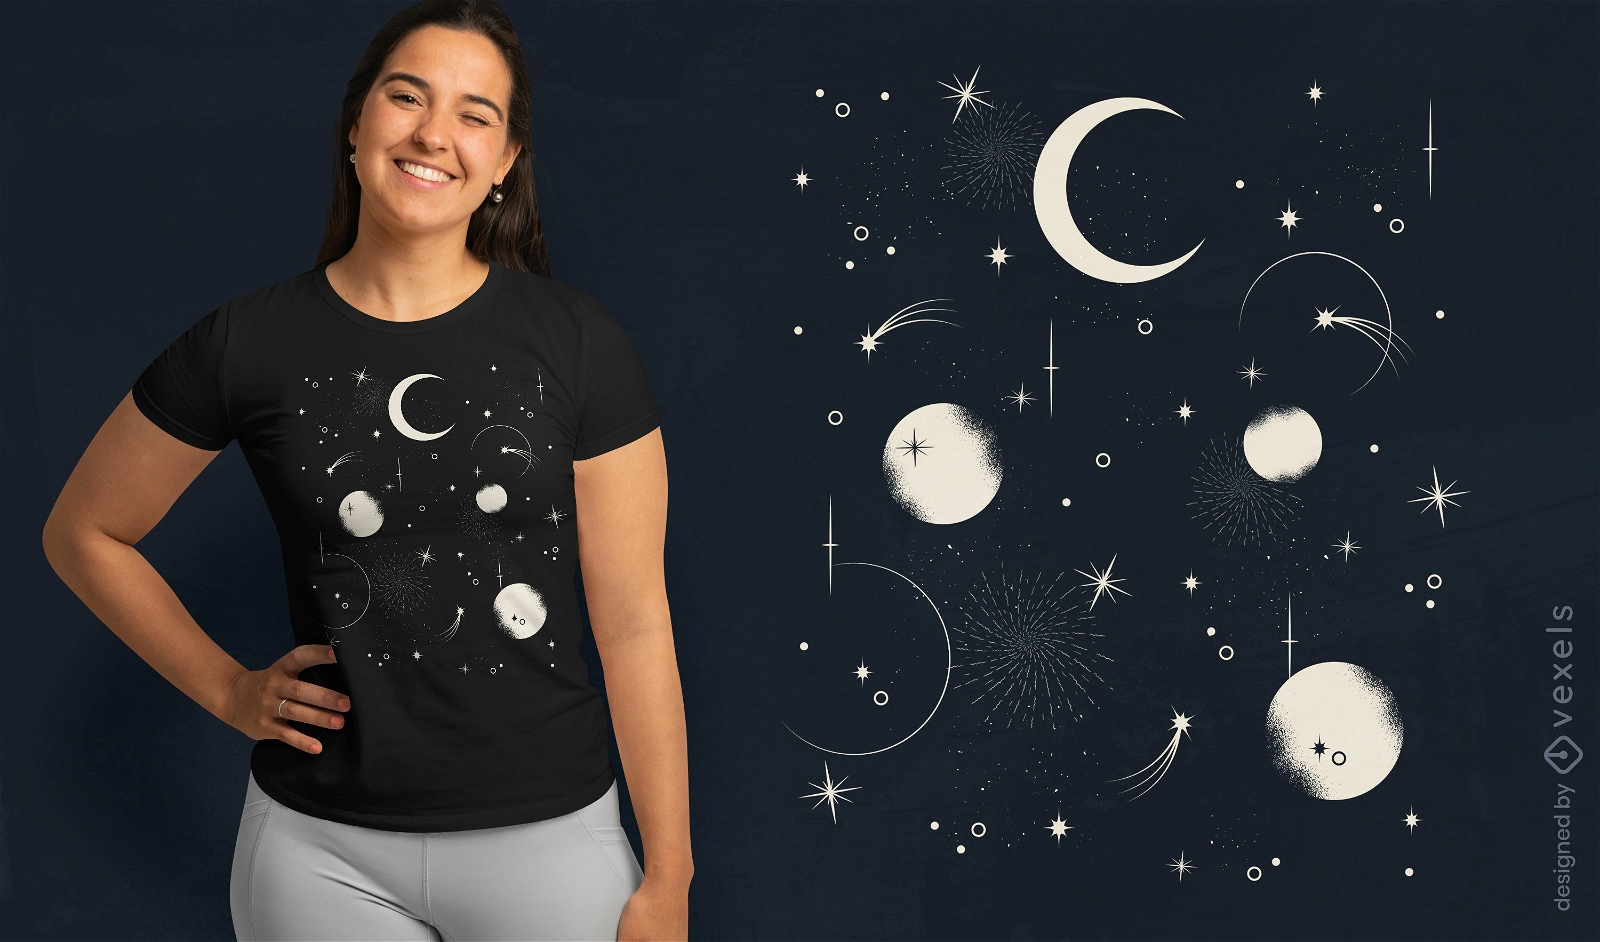 Dise?o de camiseta de luna y estrellas en el cielo nocturno.